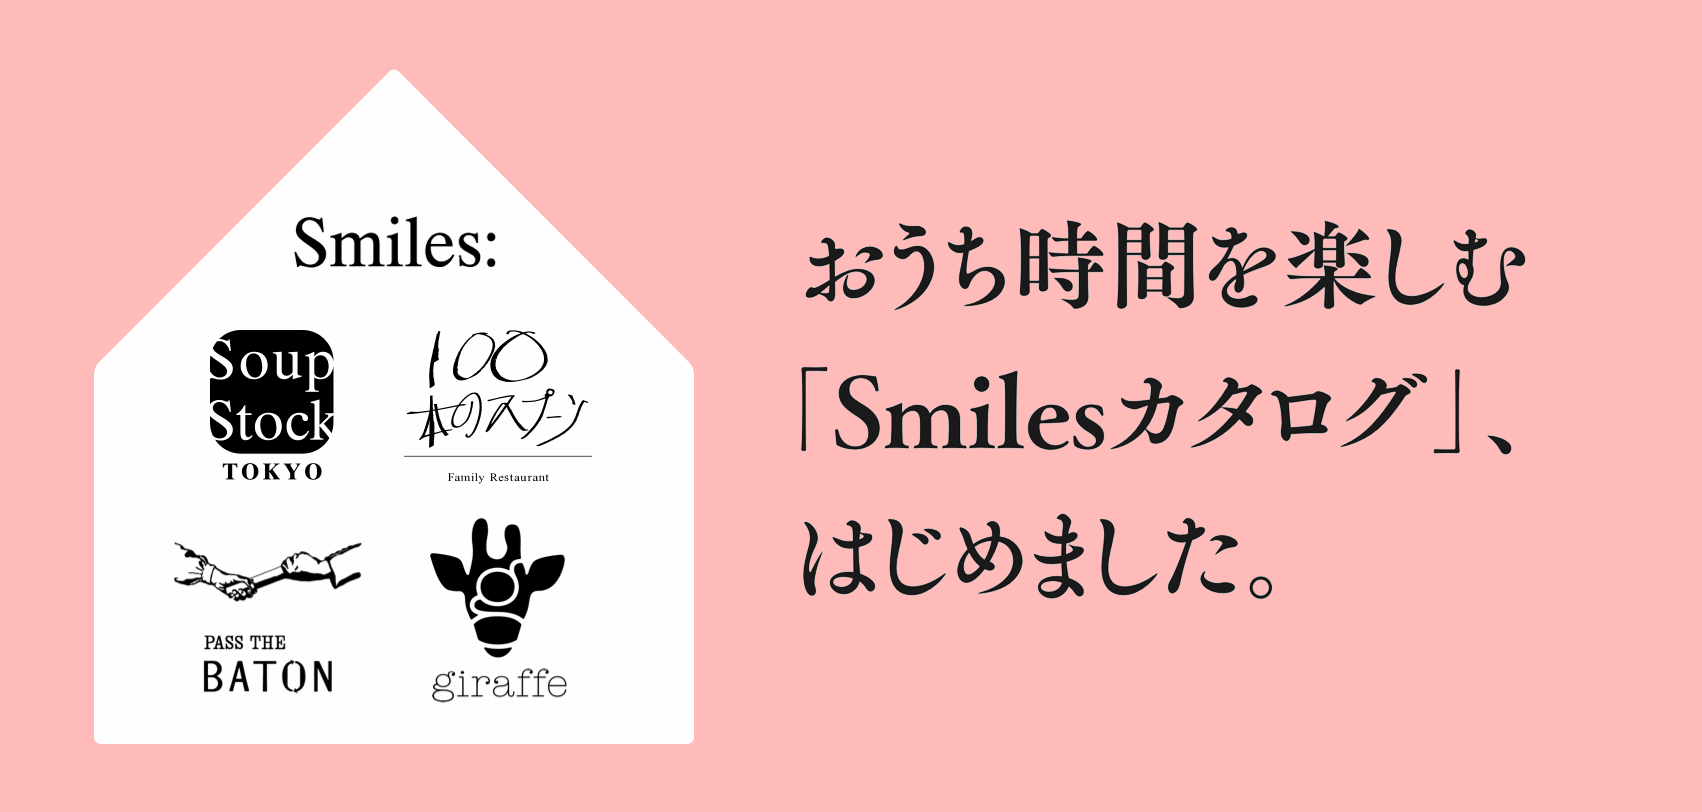 Smiles: